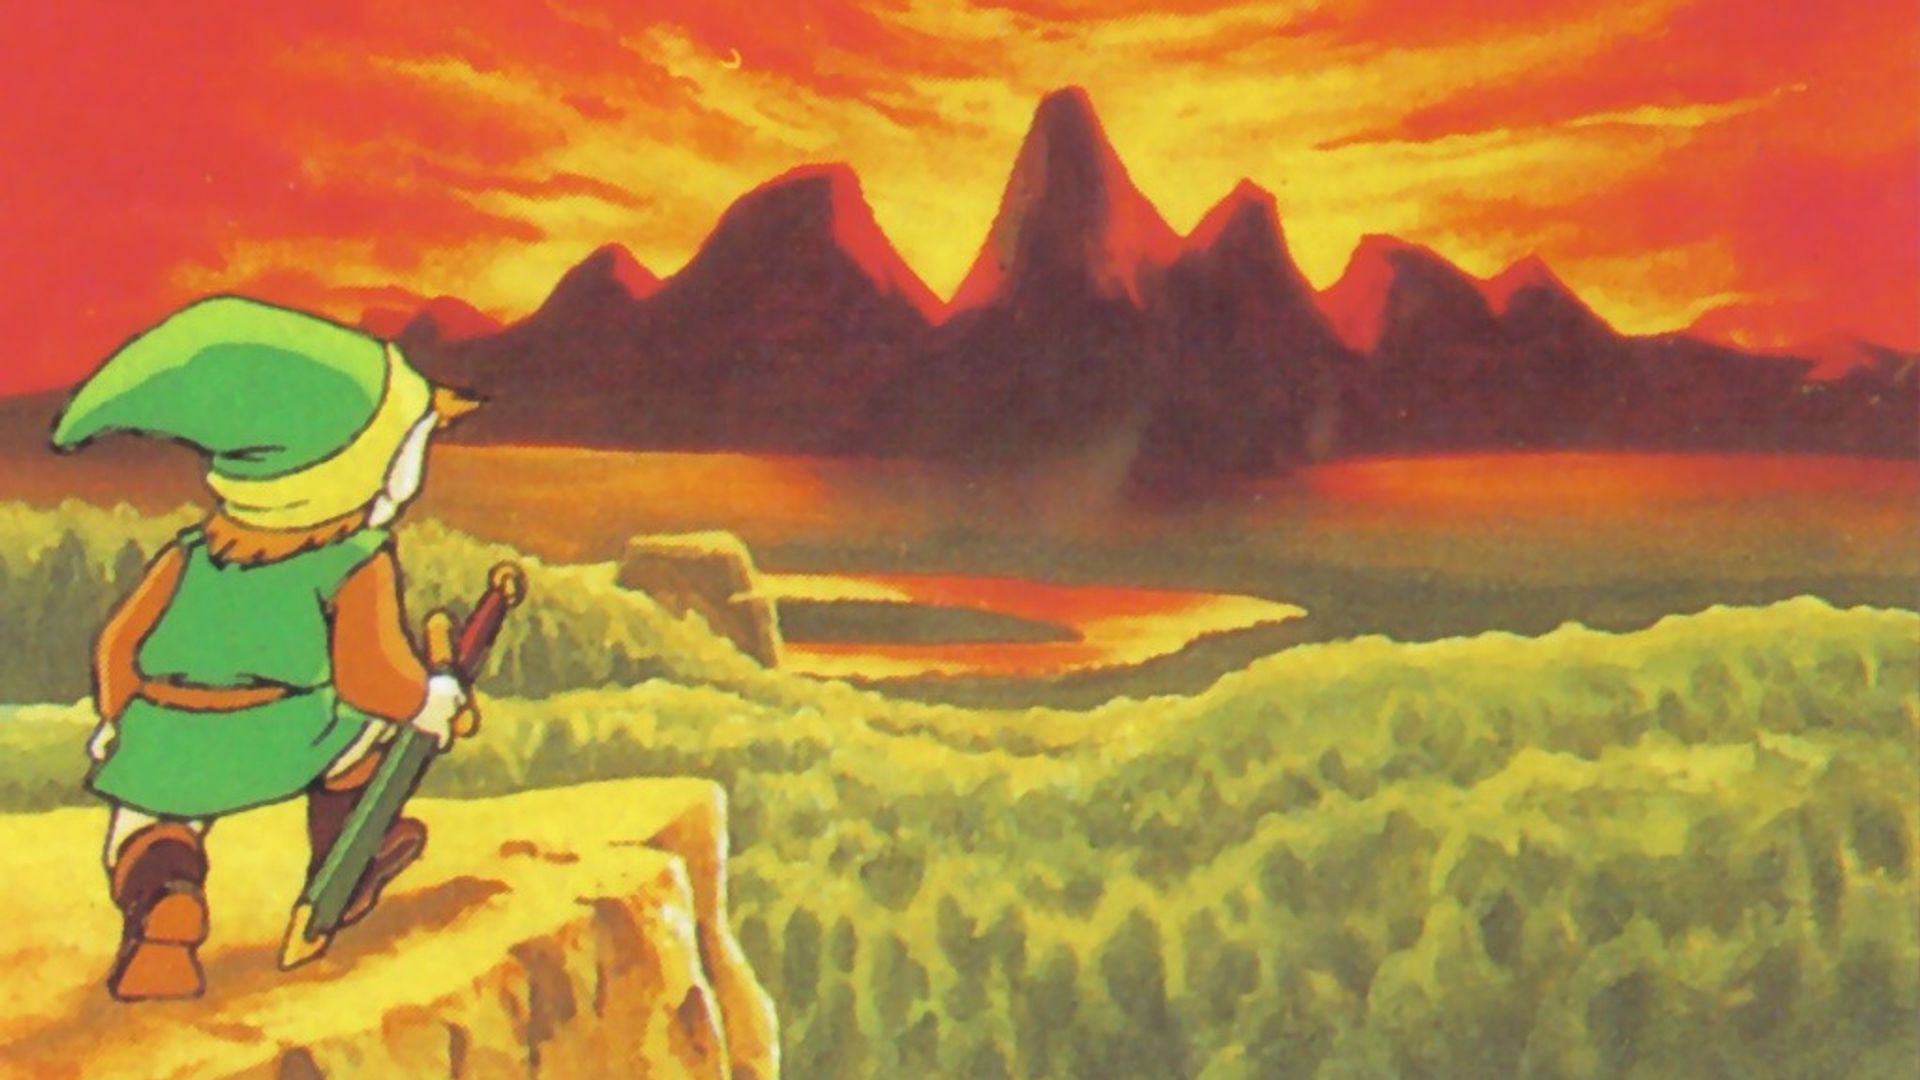 Legend of Zelda sealed NES cartridge sells at auction for $870,000